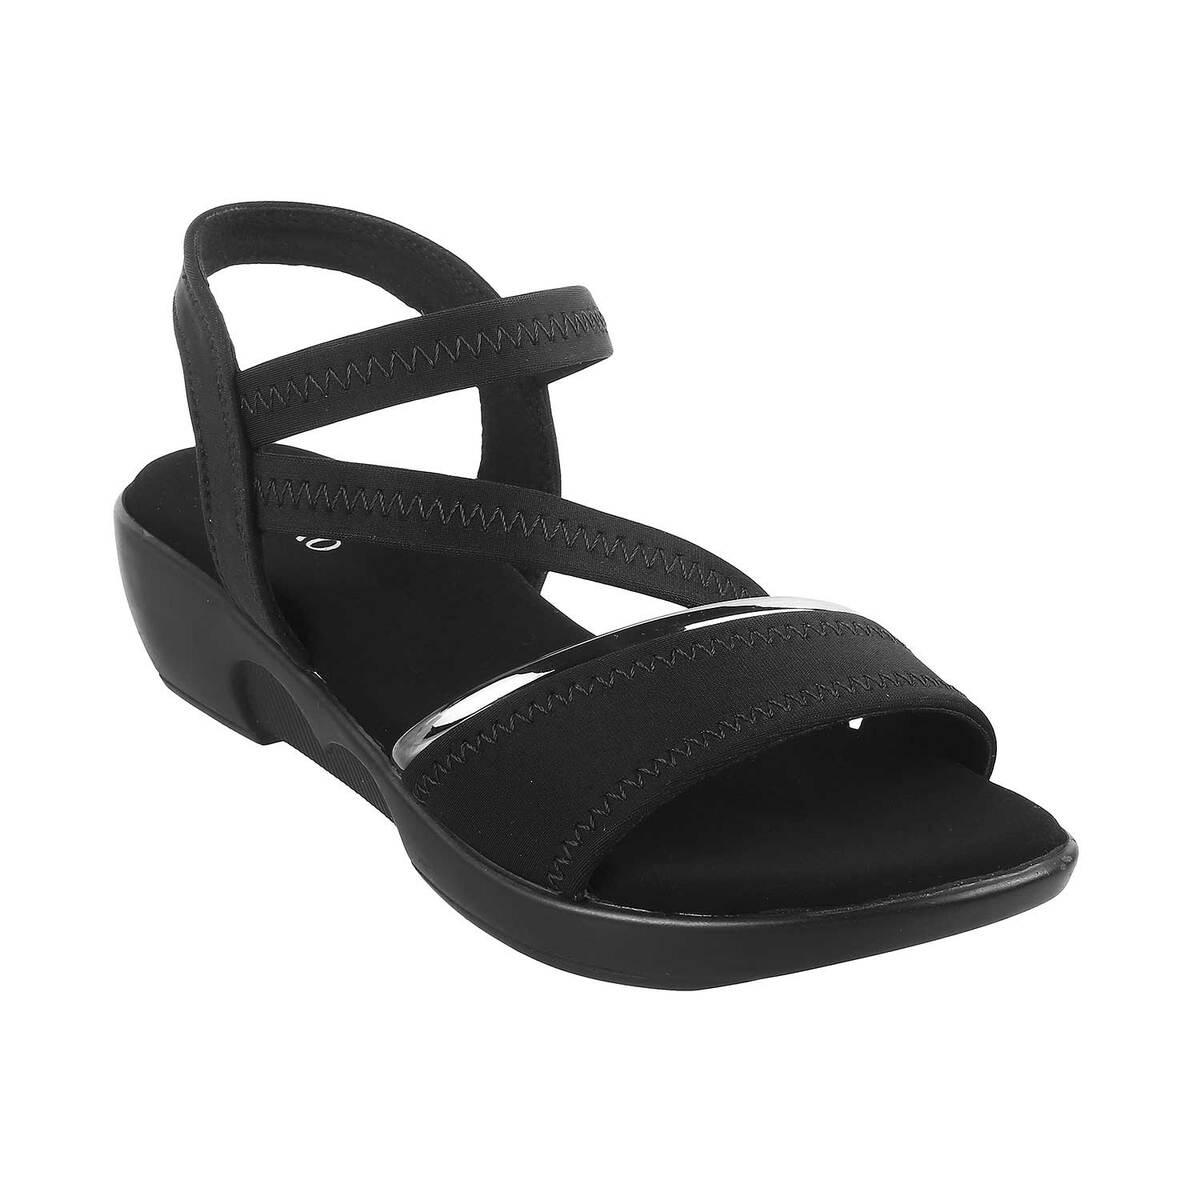 Sandals with wedge heels and buckles black ladies' | Morgan